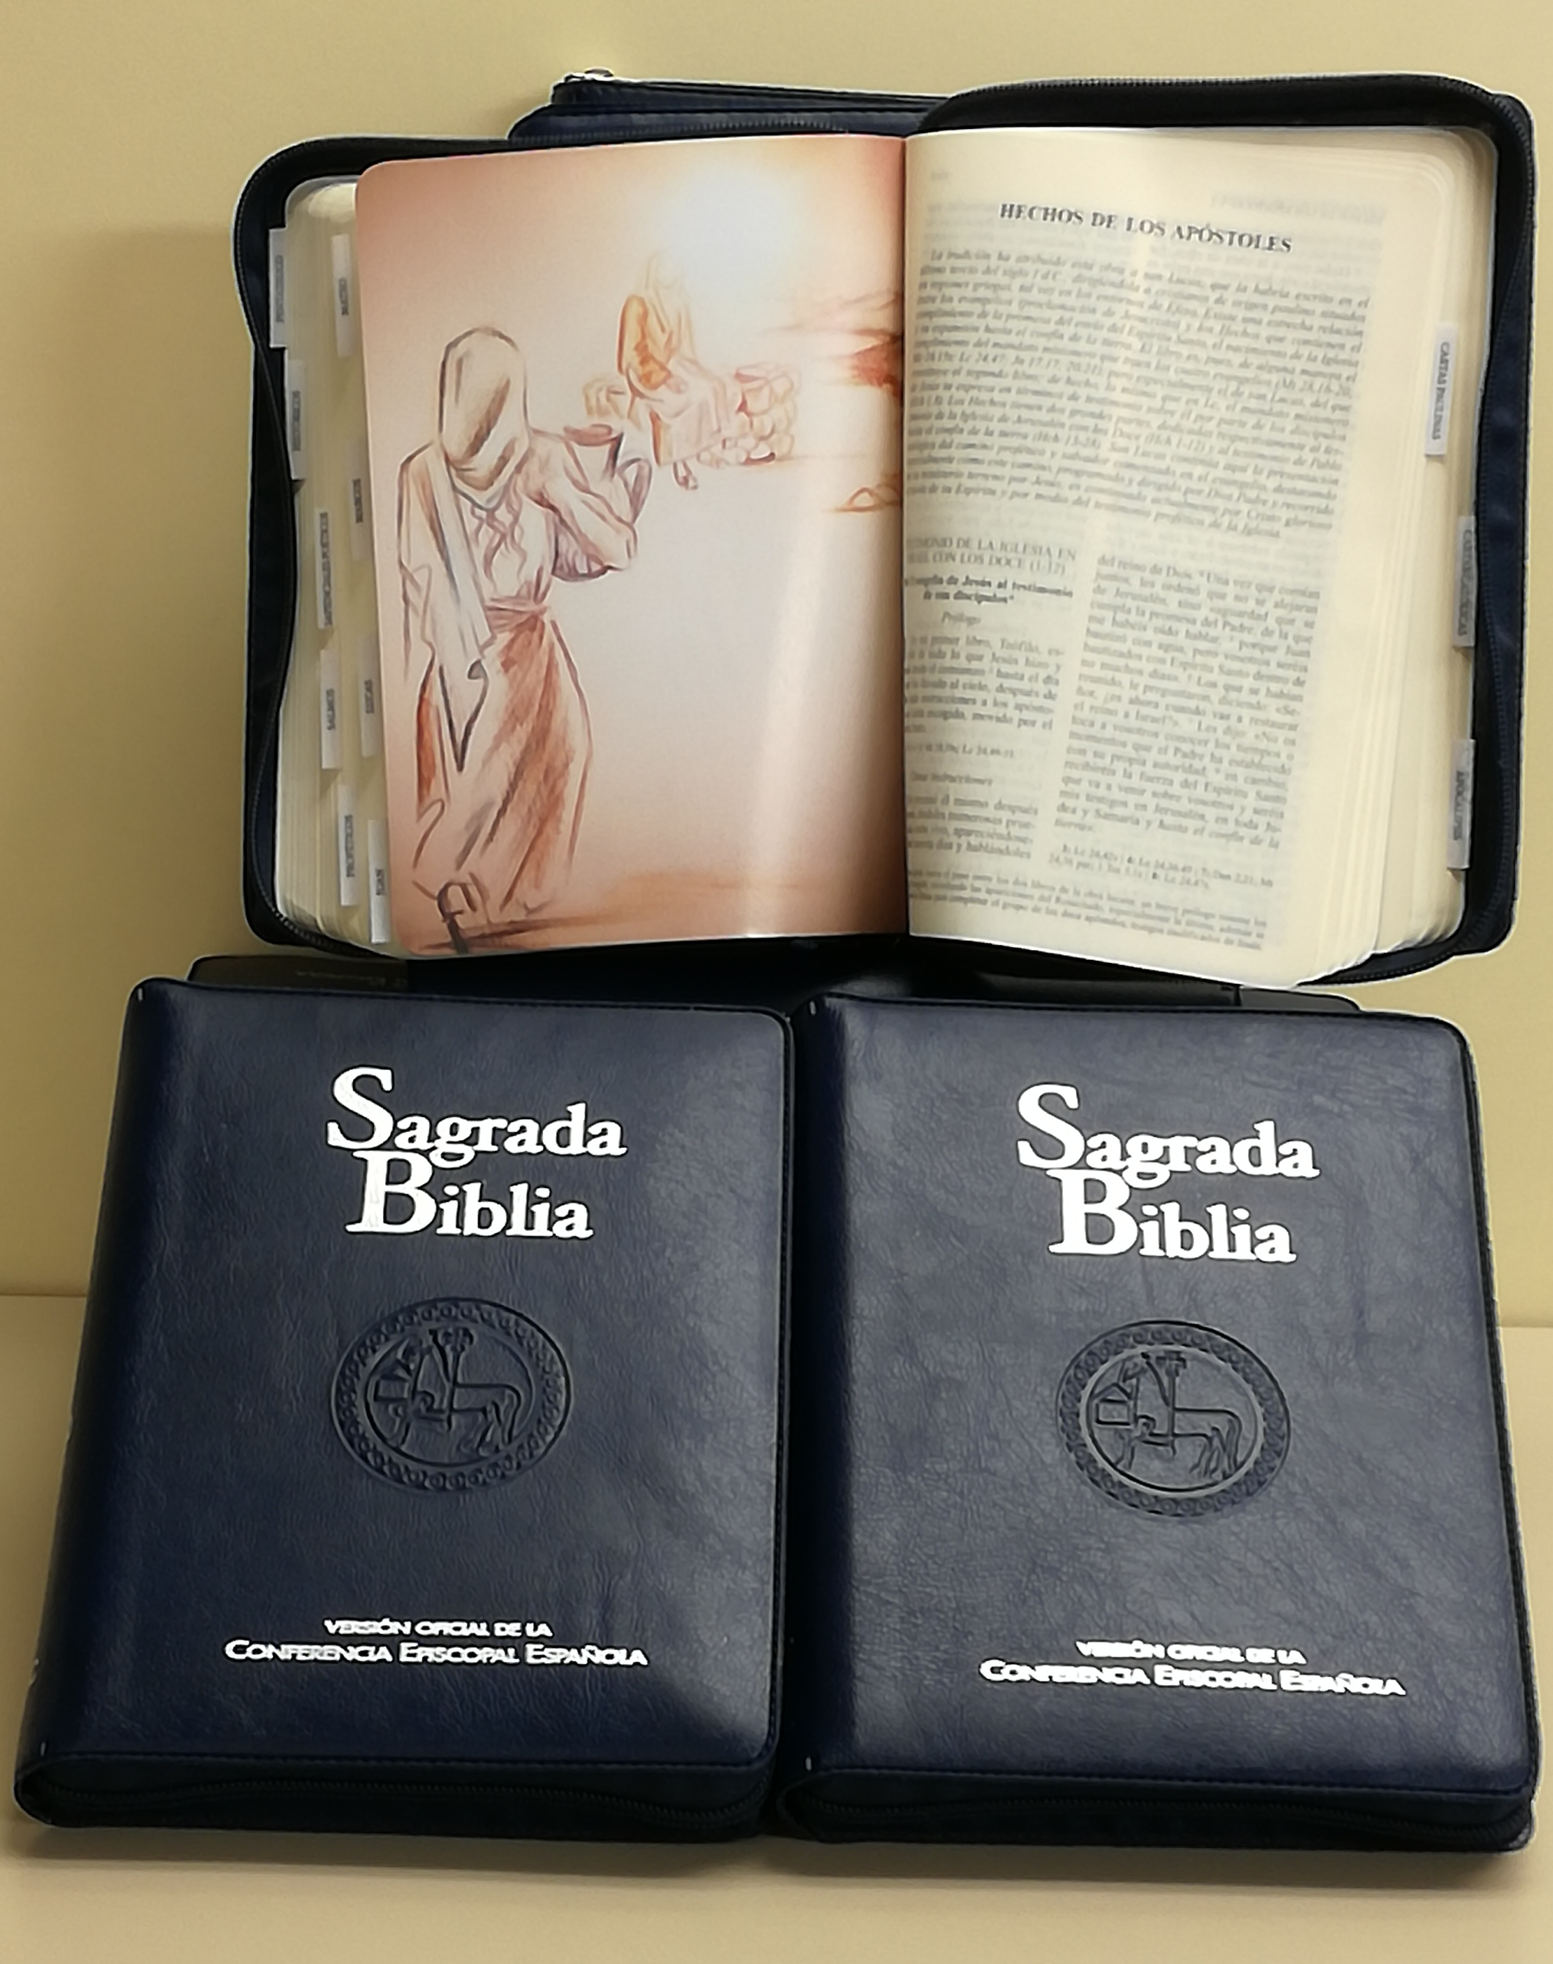 sagrada-biblia-version-oficial-de-la-cee-ed-popular-flexibook